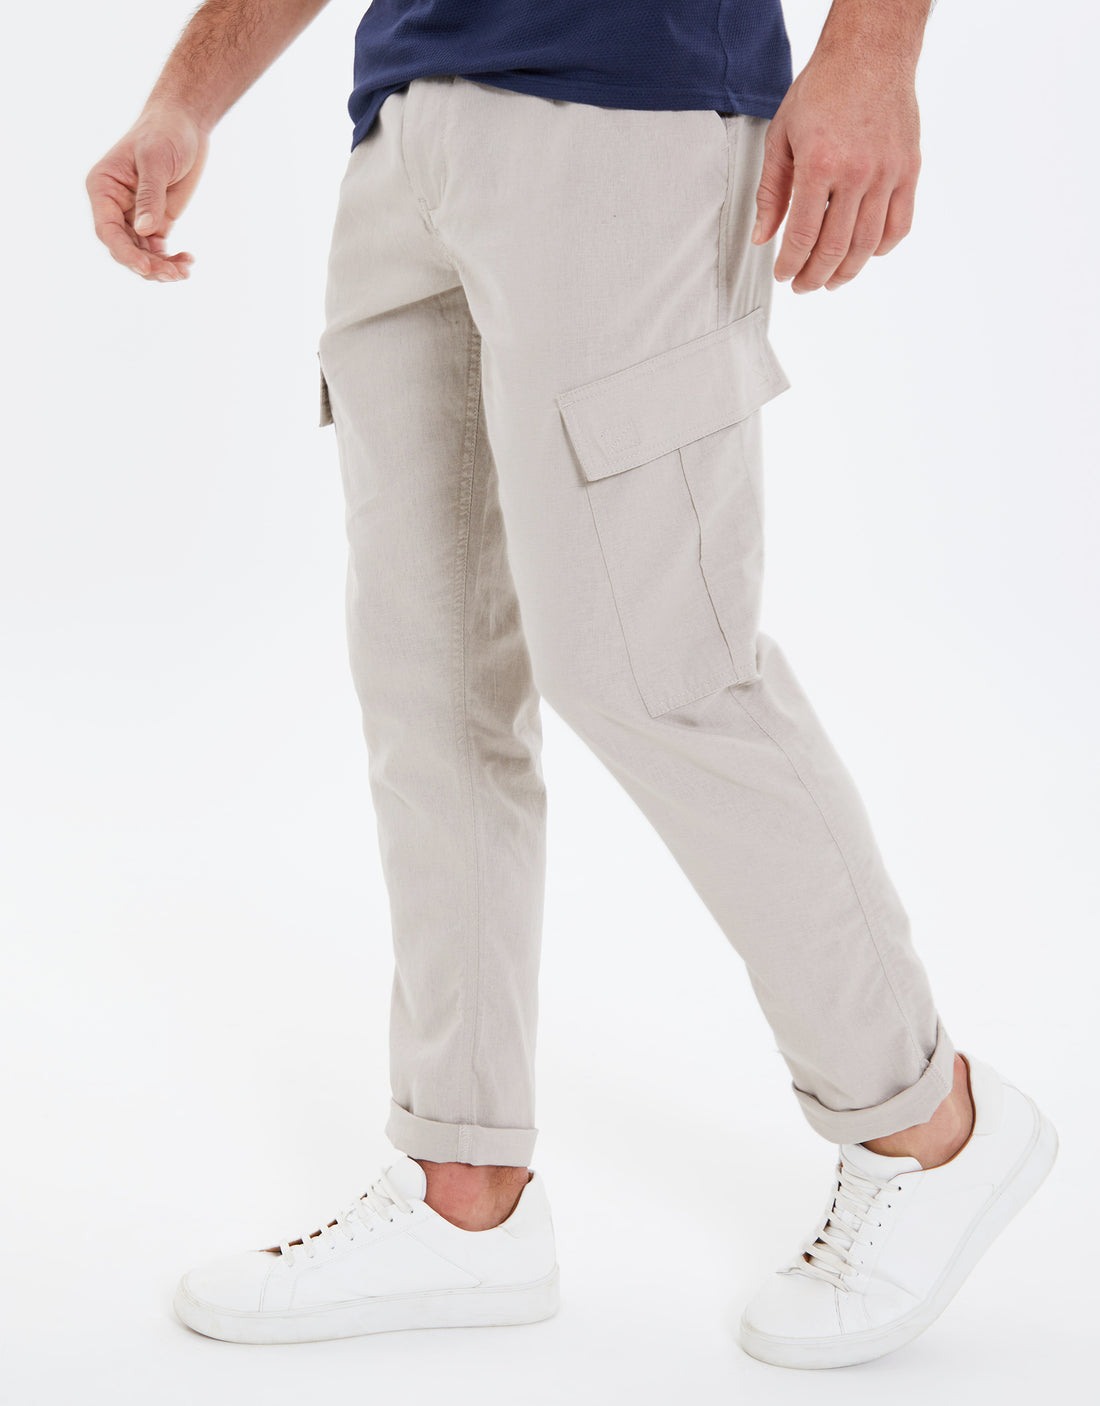 Buy Luxury Linen Pants For Men Online In India